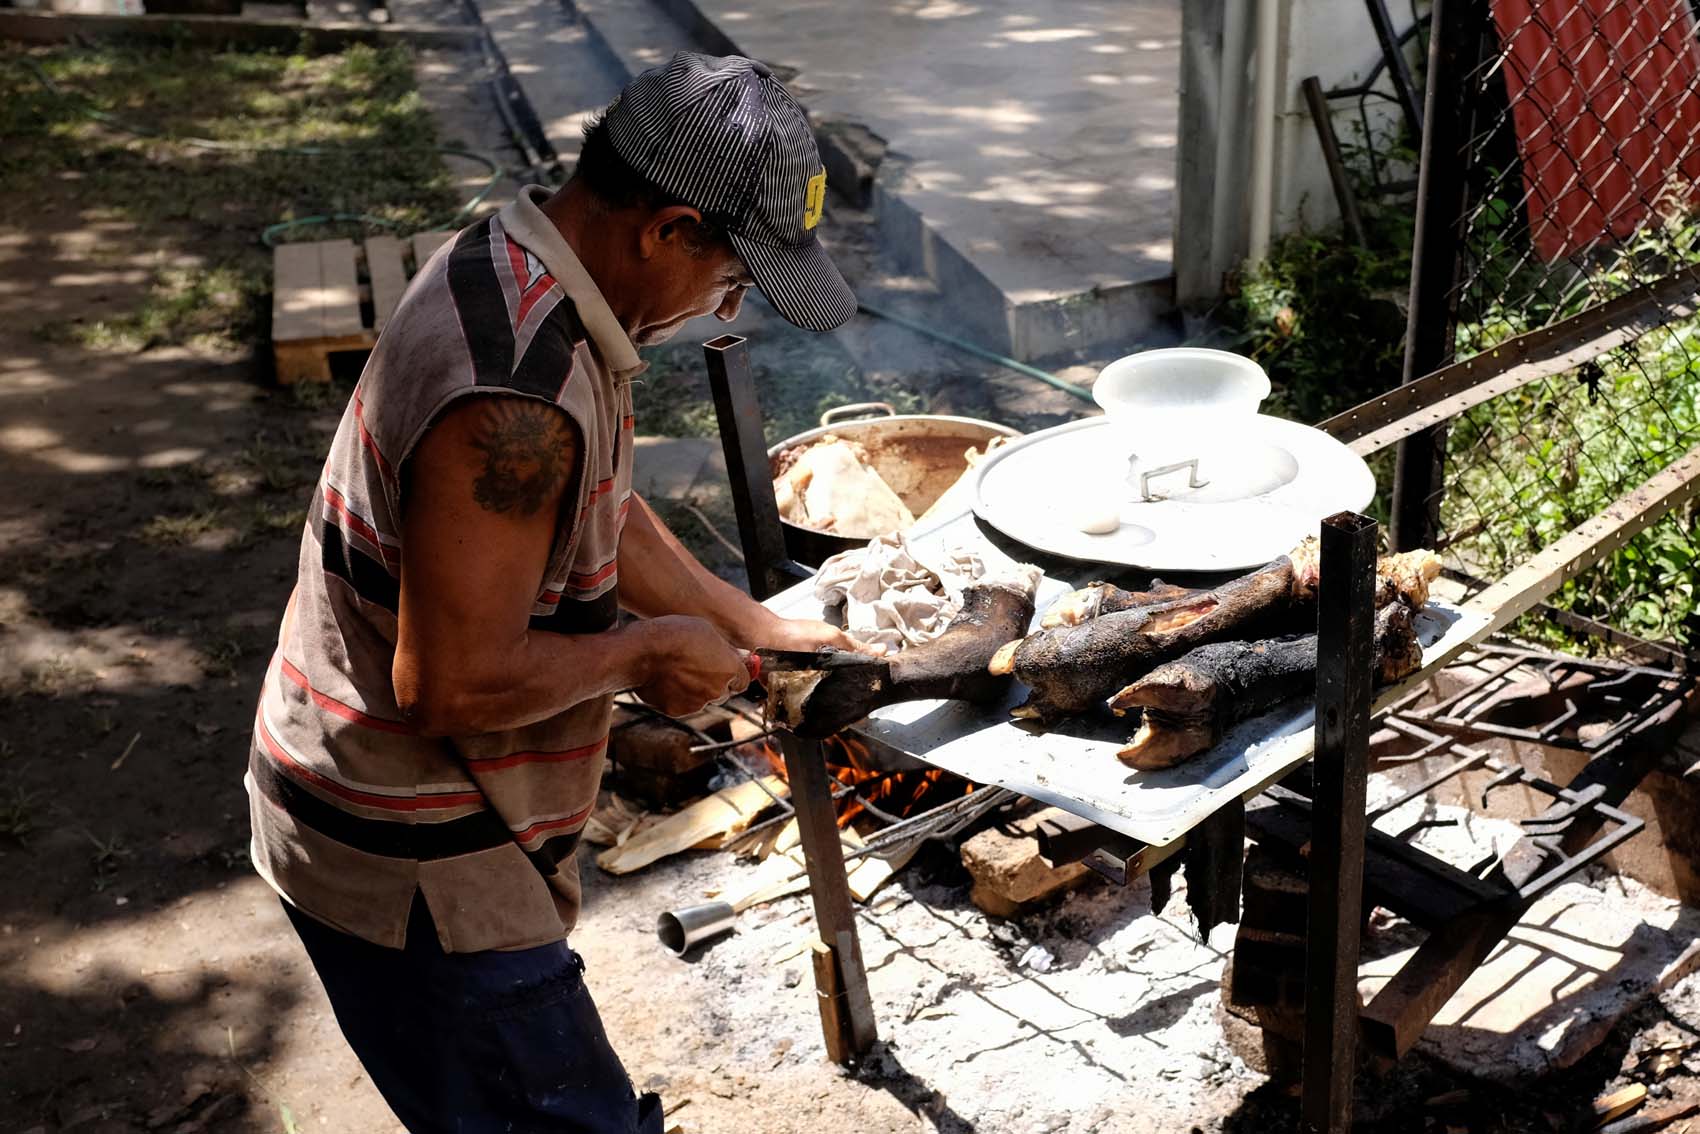 Moscas verdes, garrapatas y malos olores: Una comuna en Caracas cría reses para vender carne (fotos)